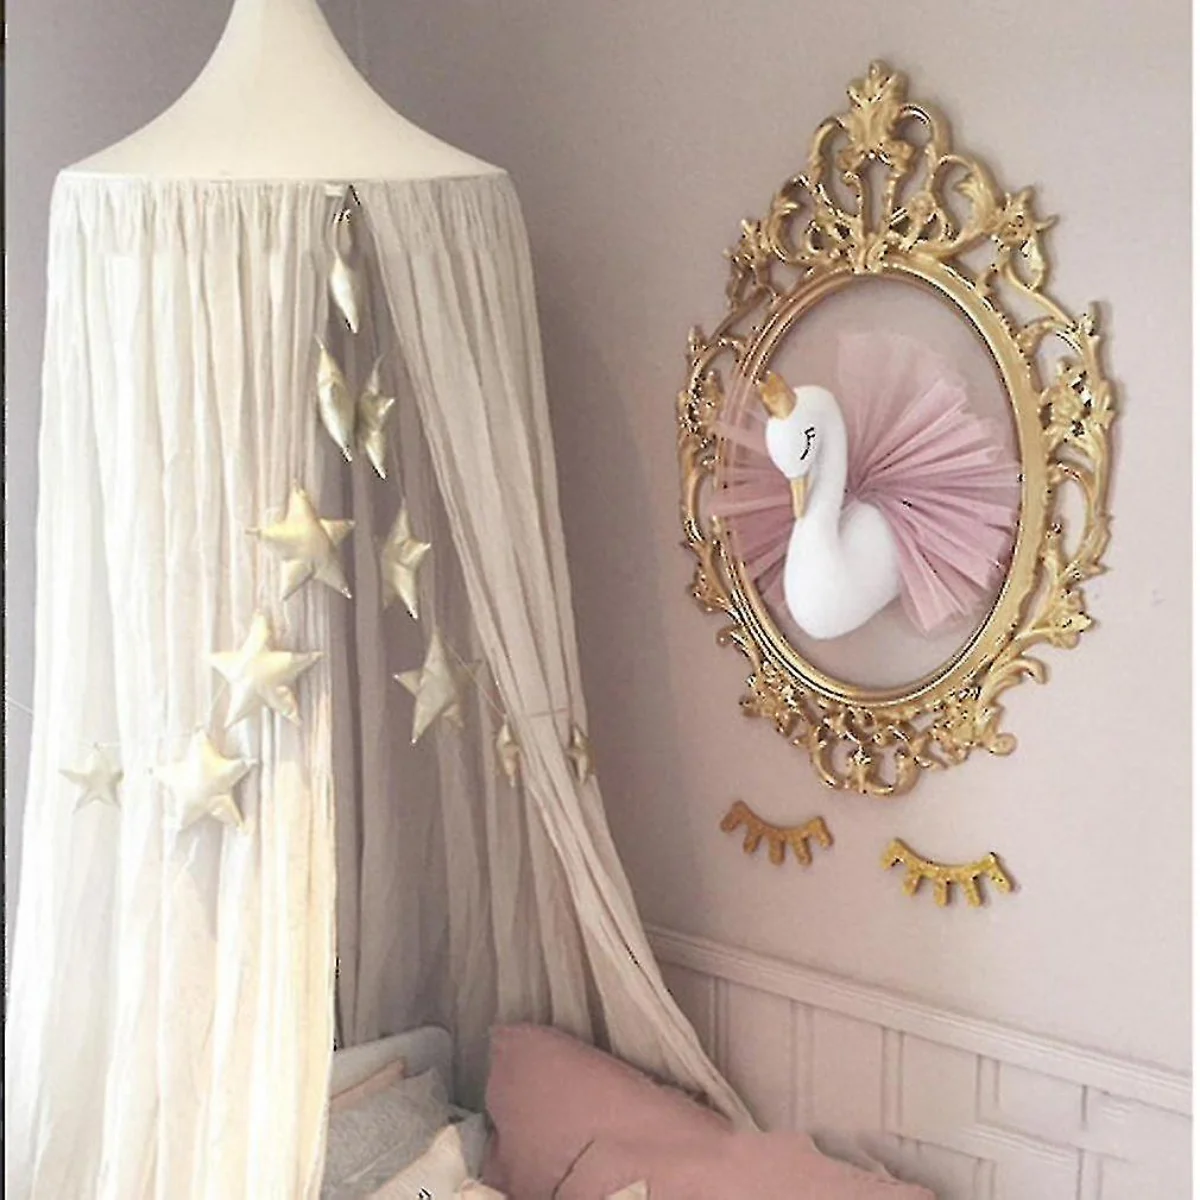 اتاق خواب دخترانه با تابلوی دیواری قو سفید و قاب طلایی